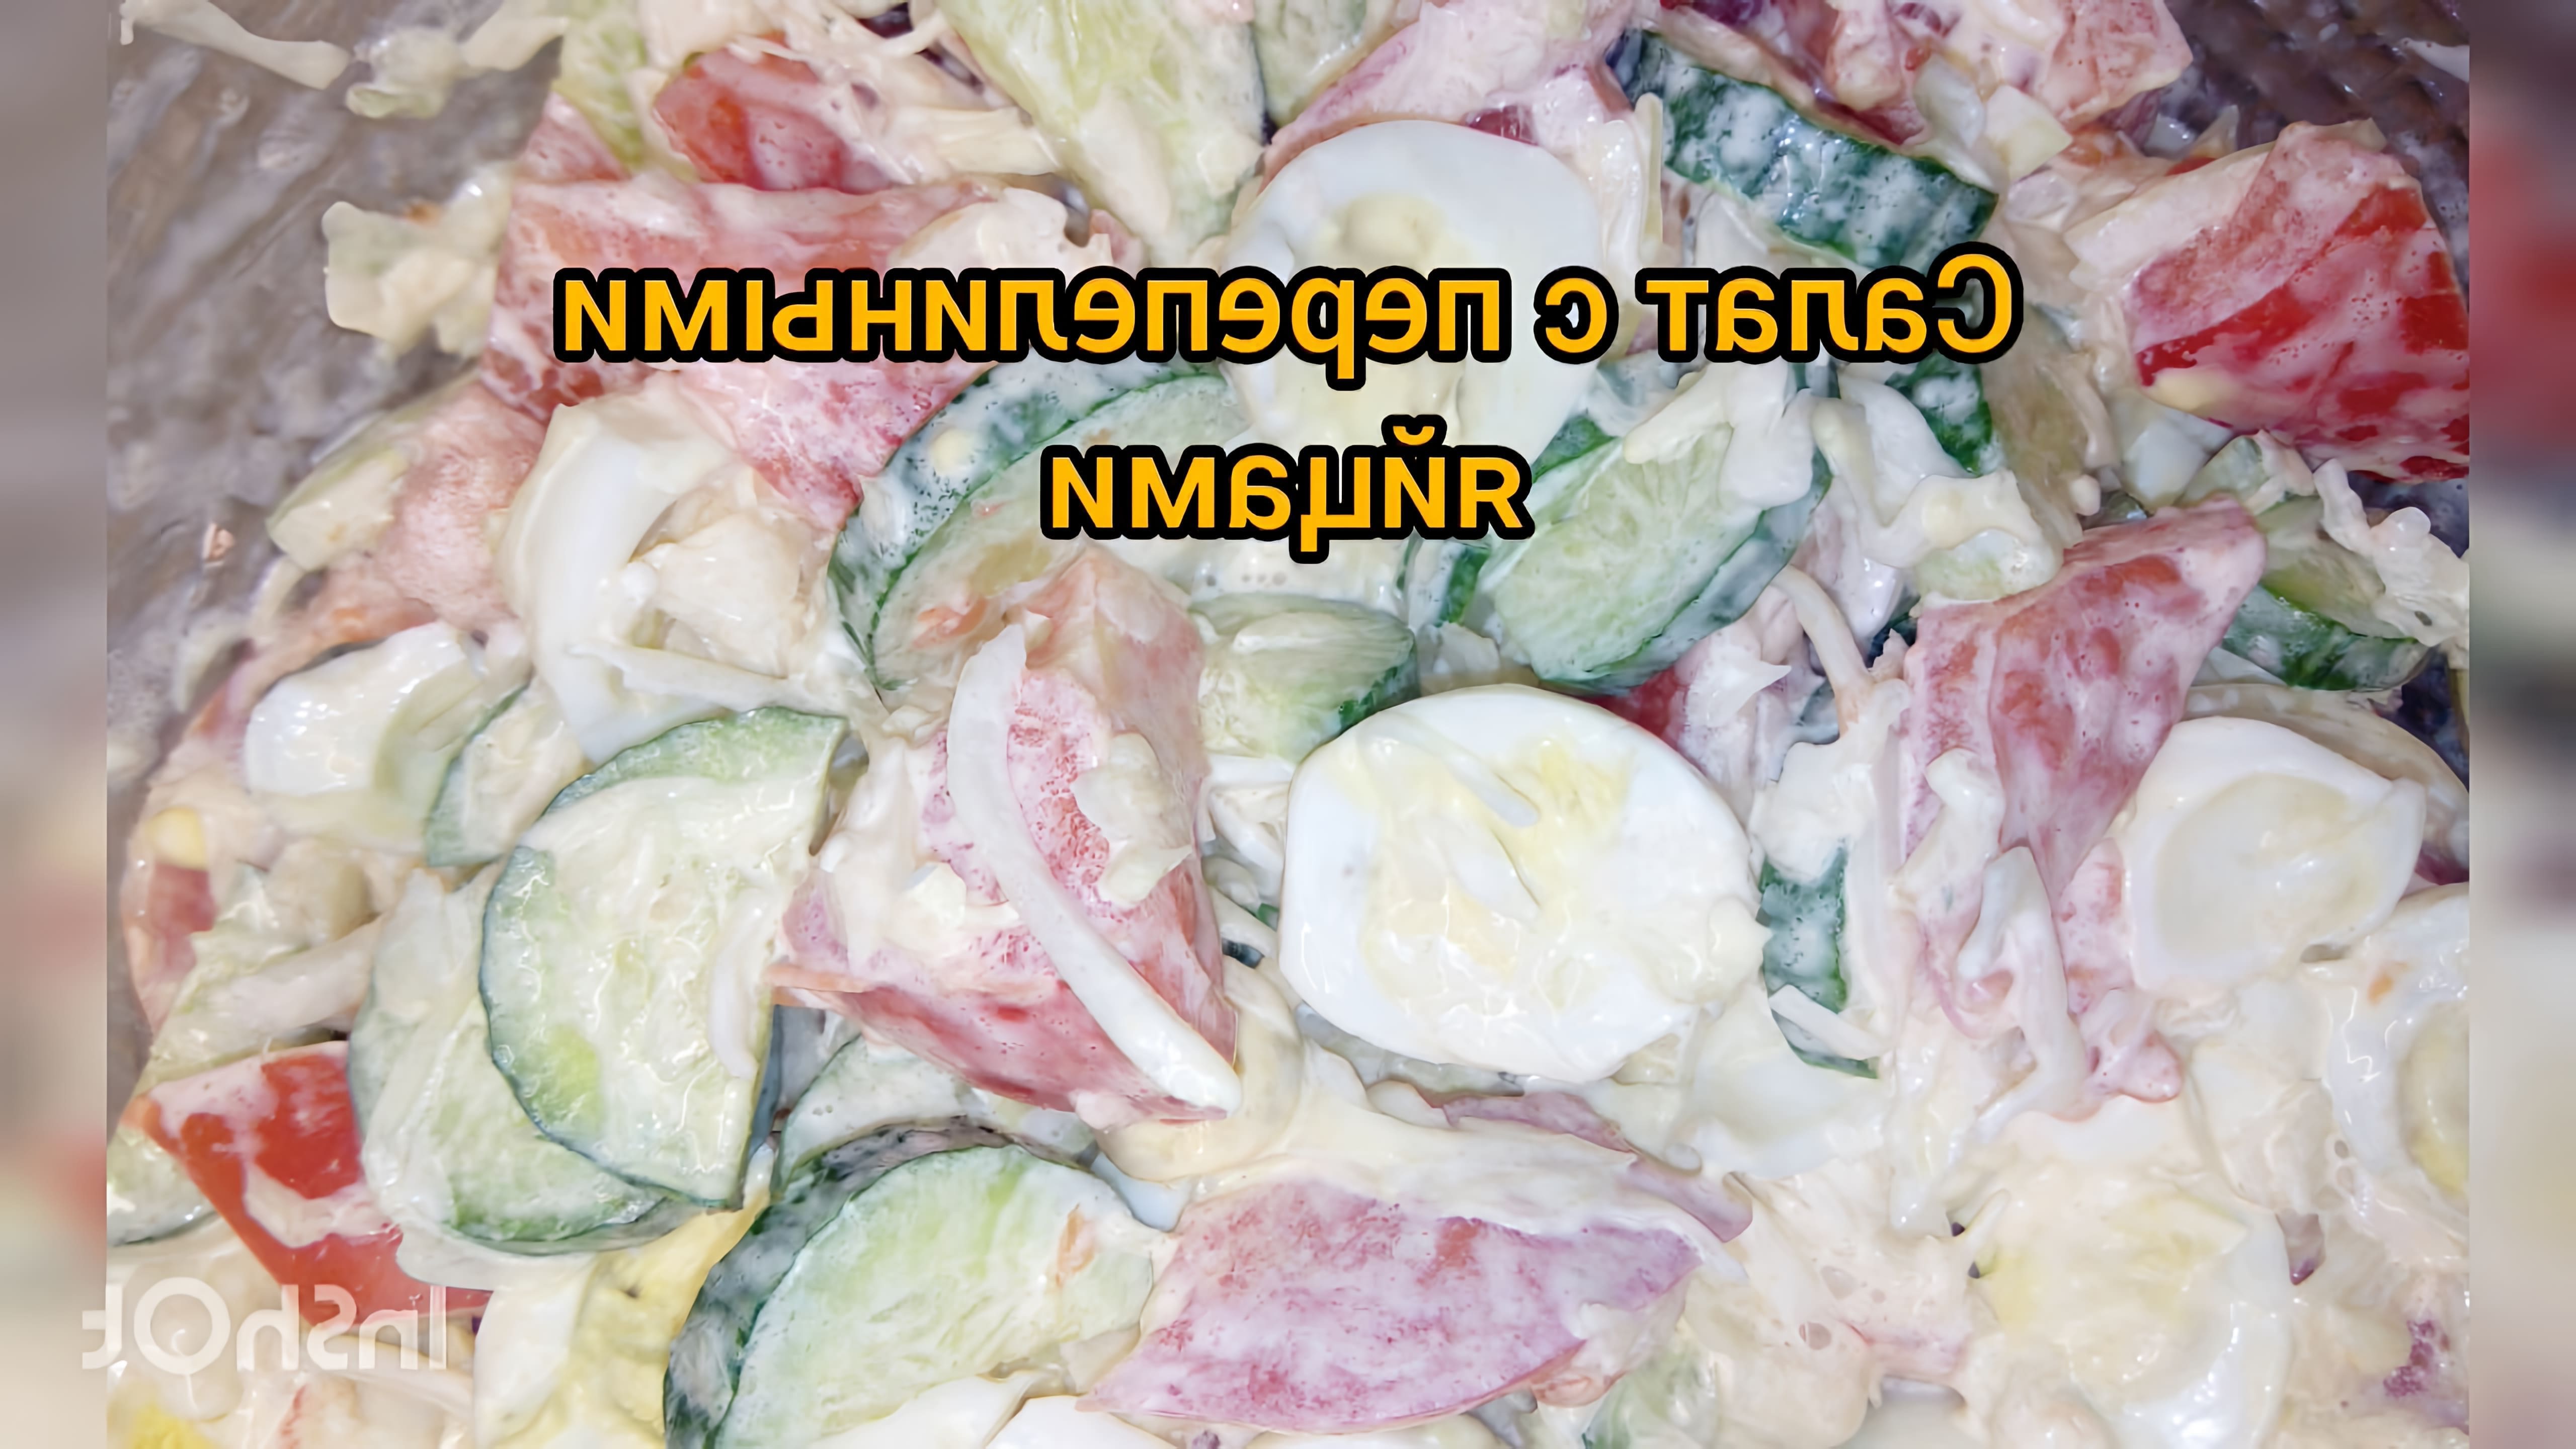 Салат с перепелиными яйцами - это вкусное и полезное блюдо, которое можно приготовить в домашних условиях